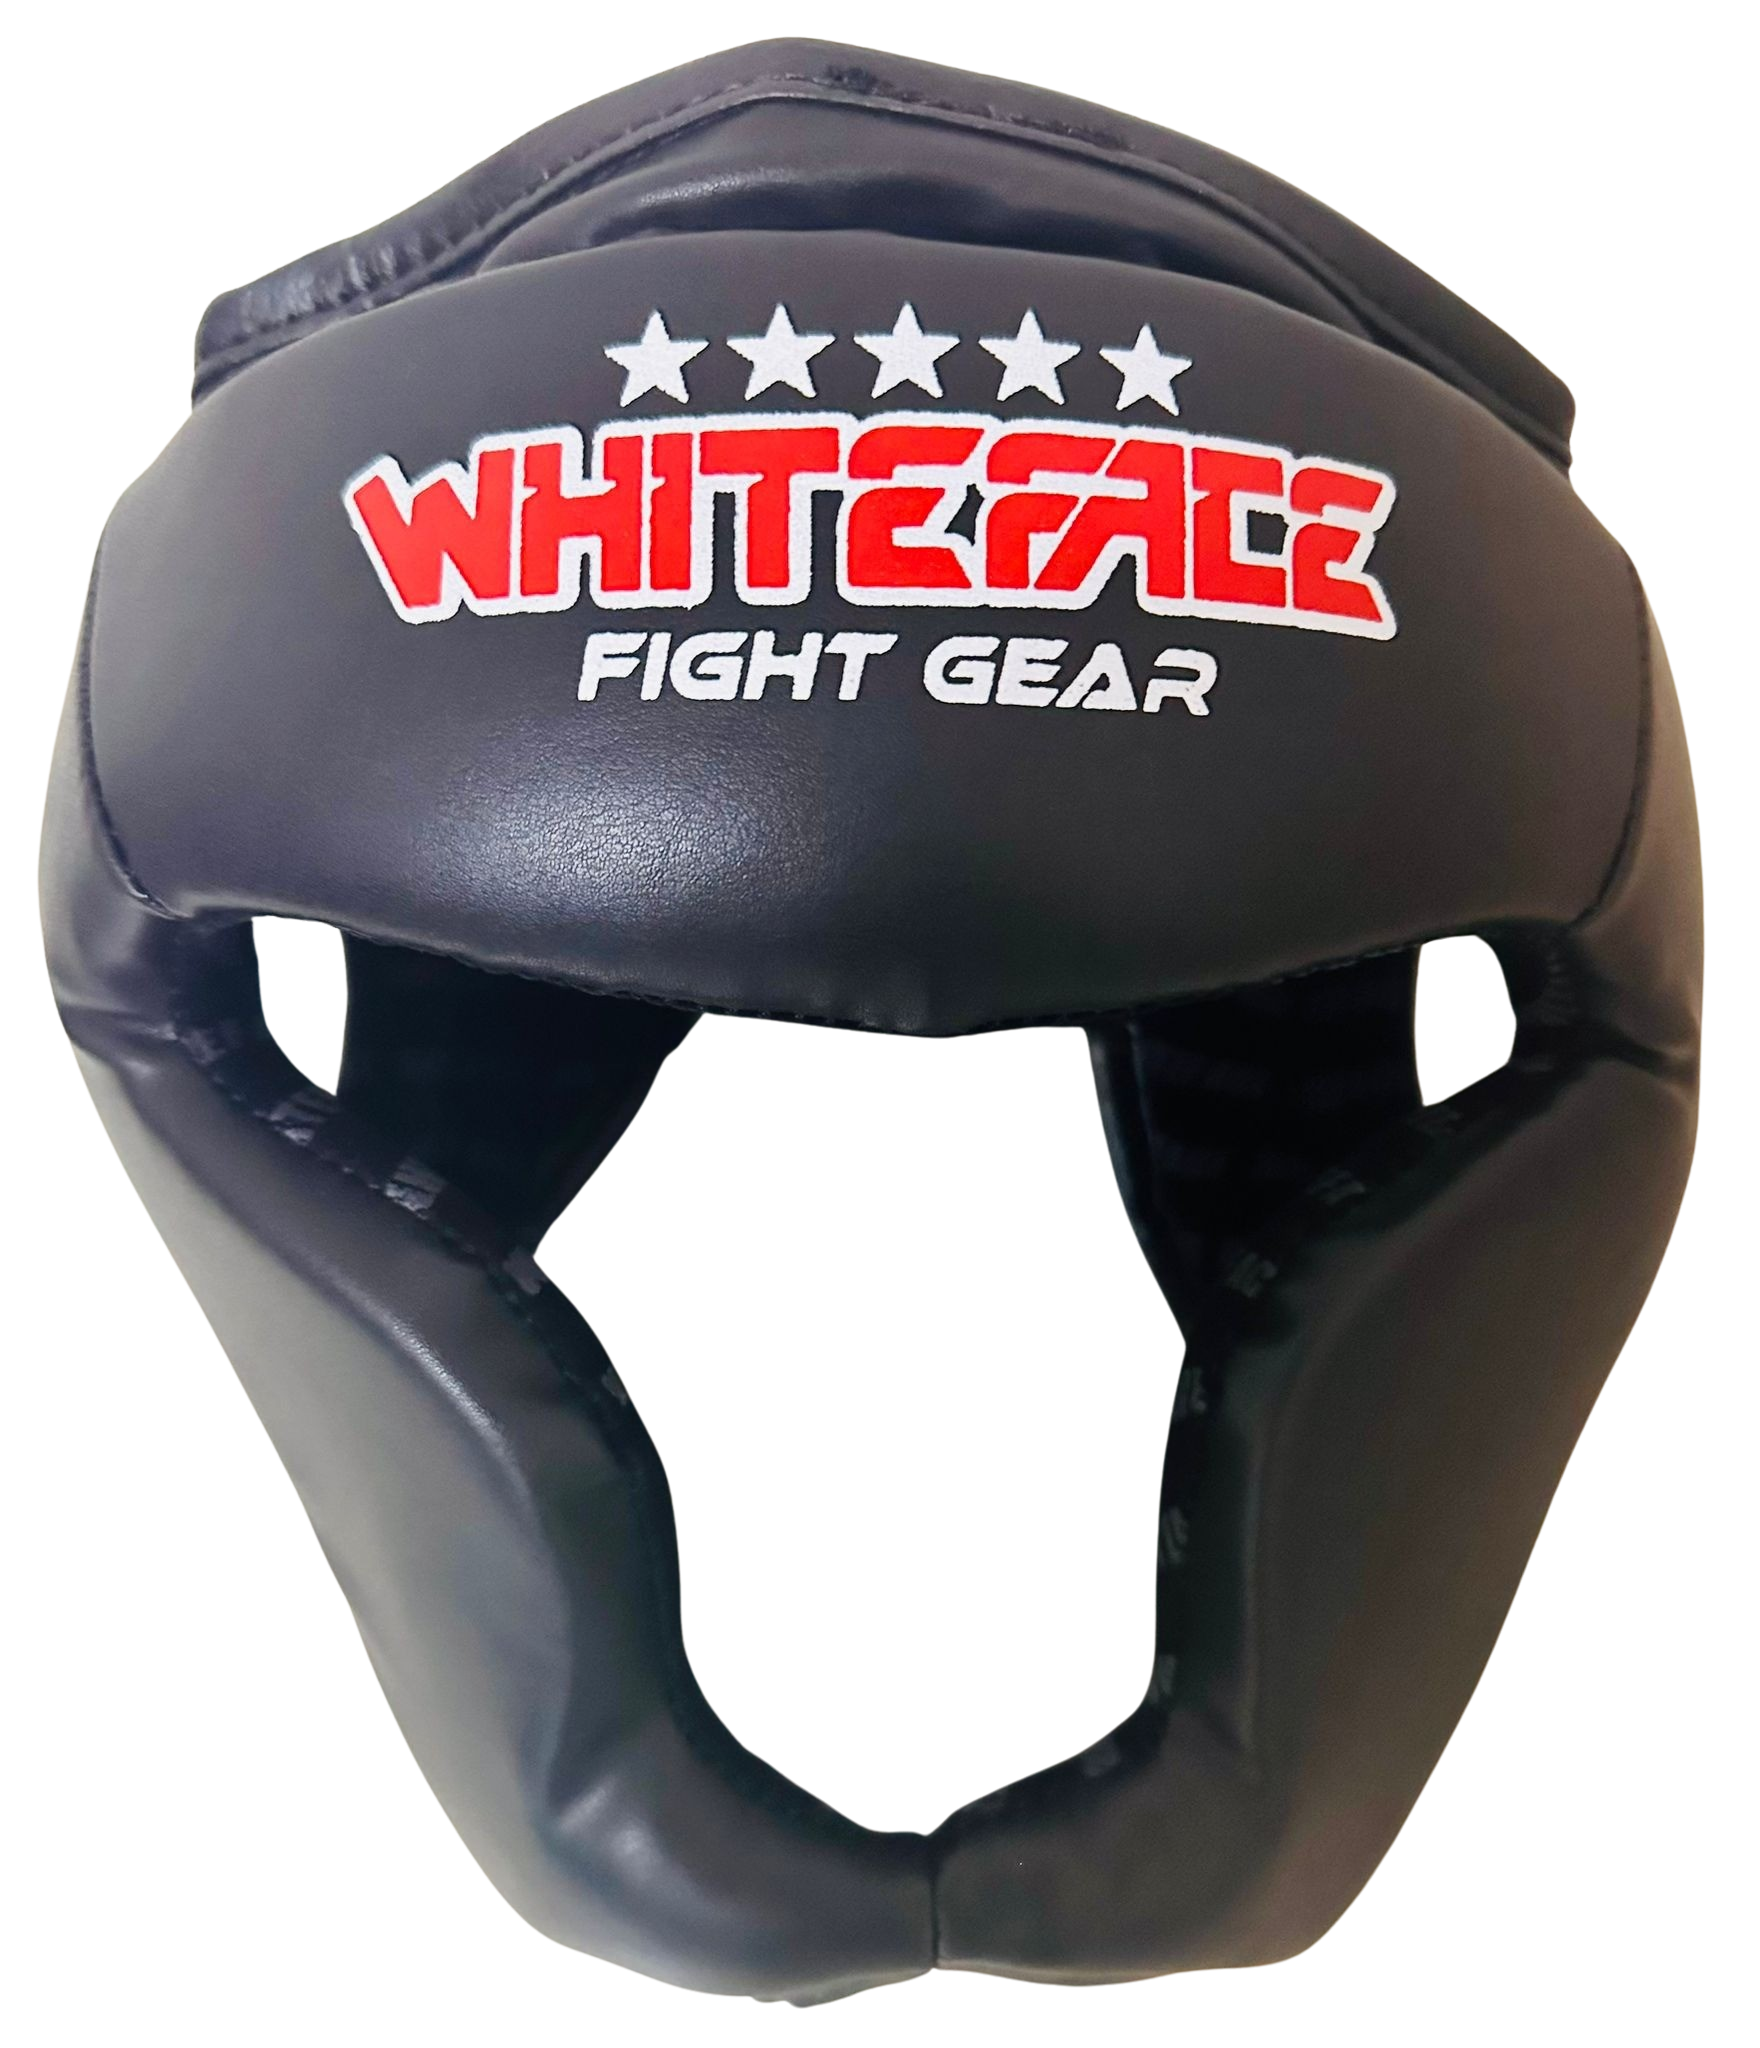 Whiteface Yanak ve Çene Korumalı Boks Kaskı/Muay Thai/Kick Boks Kask (siyah)